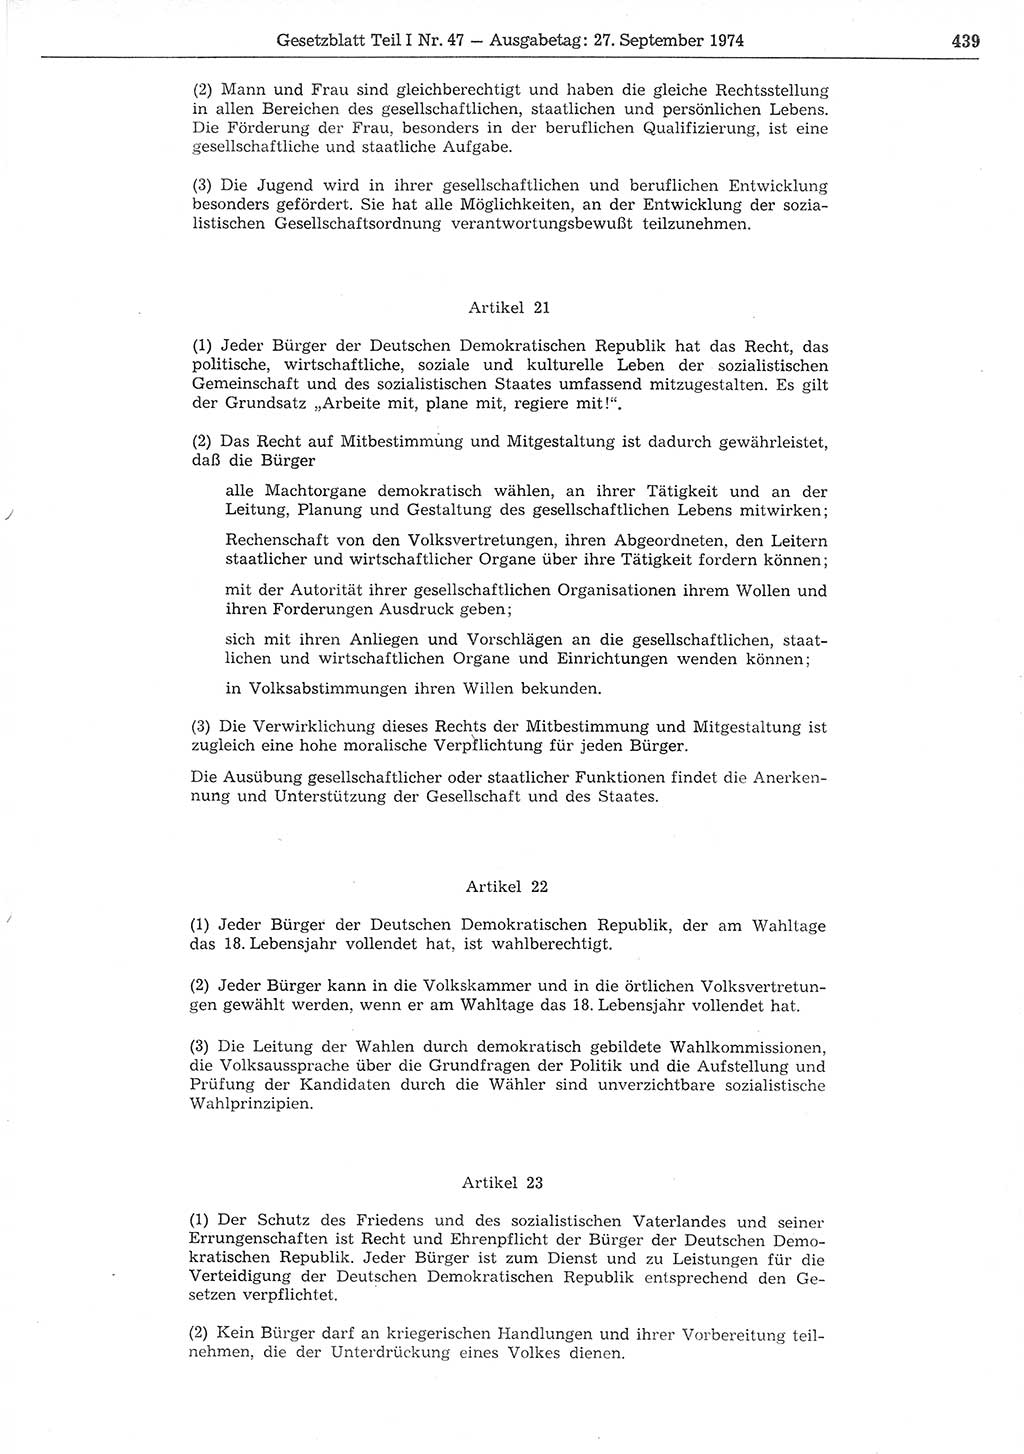 Gesetzblatt (GBl.) der Deutschen Demokratischen Republik (DDR) Teil Ⅰ 1974, Seite 439 (GBl. DDR Ⅰ 1974, S. 439)